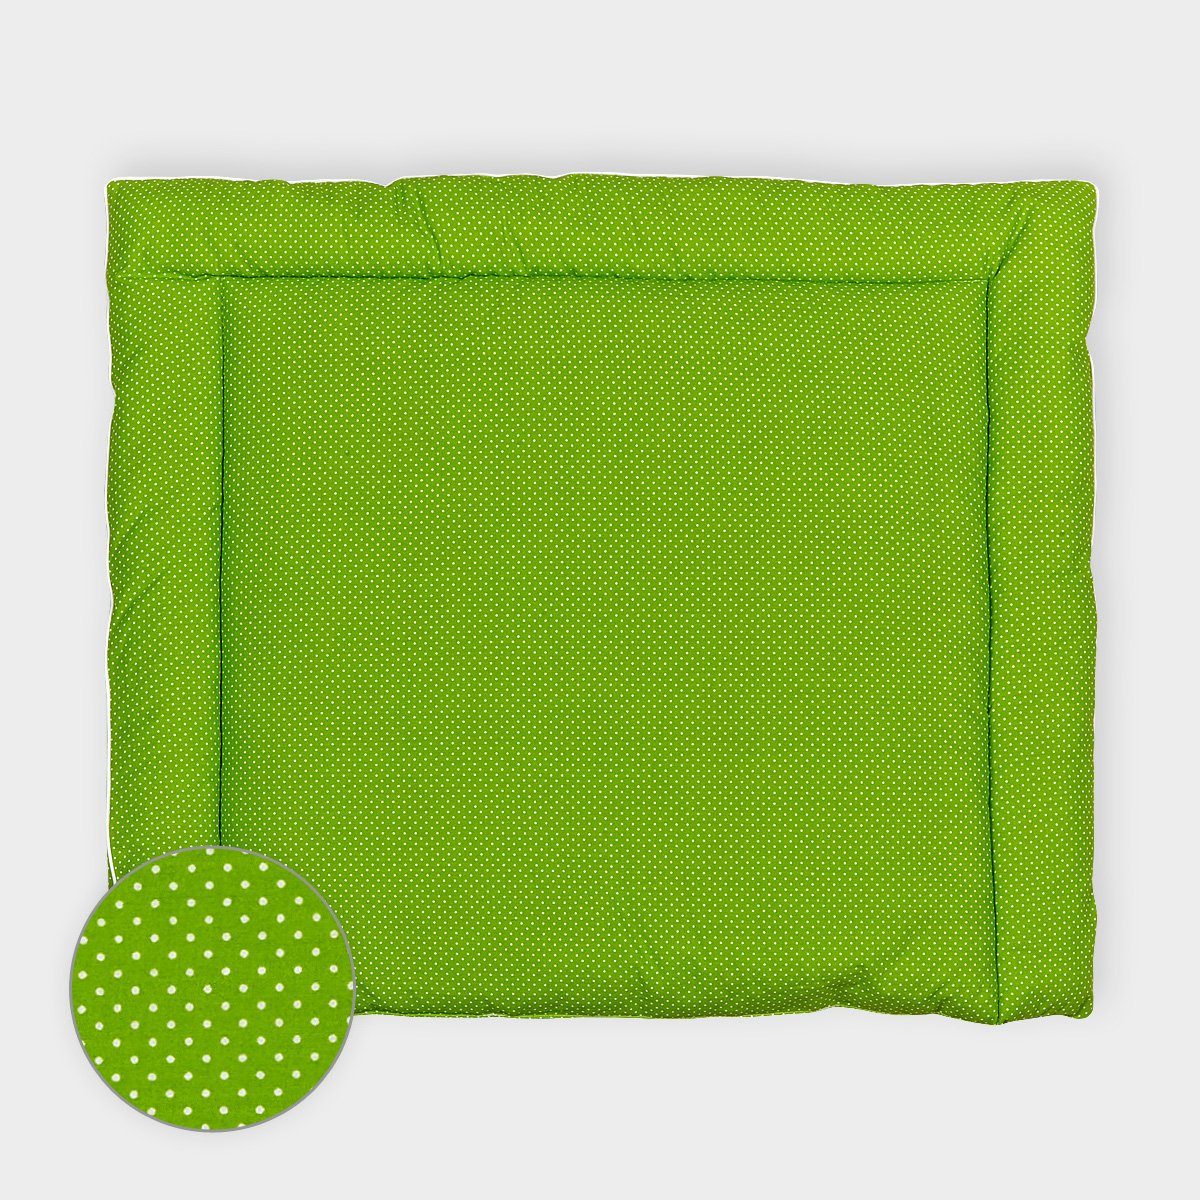 KraftKids Wickelauflage weiße Punkte auf Grün, extra Weich (500 g/qm), mit antiallergenem Vlies gefüllt